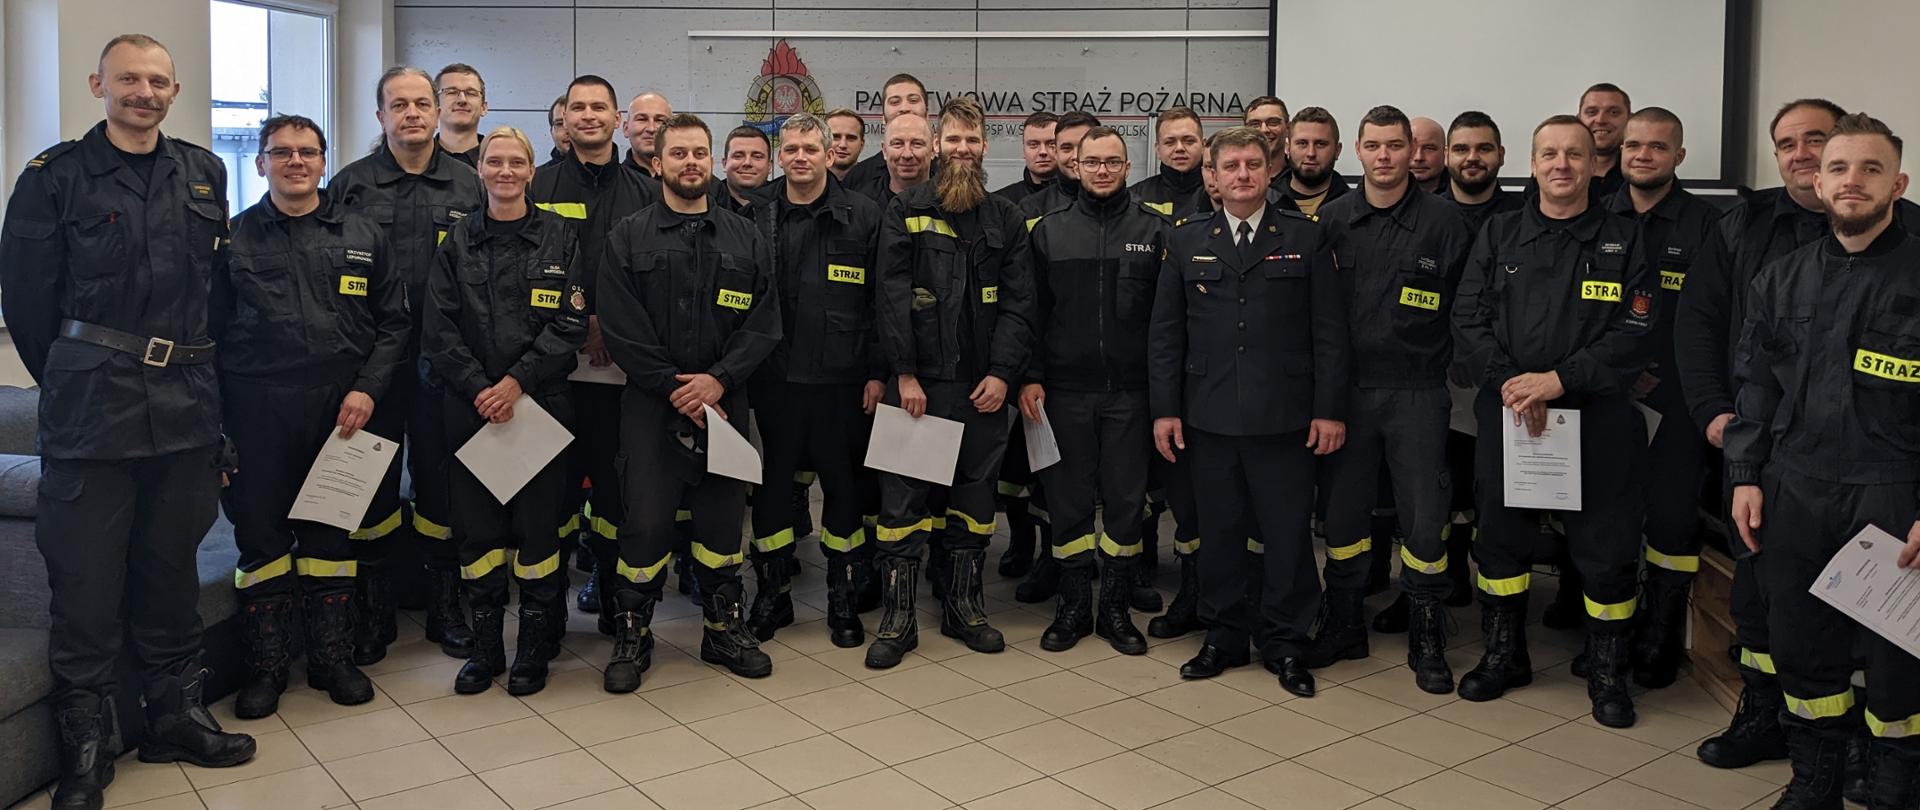 Pamiątkowa fotografia. Absolwenci szkolenia kierujących działaniem ratowniczym dla OSP stoją w rzędach trzymając zaświadczenia poświadczających ukończenie kursu.